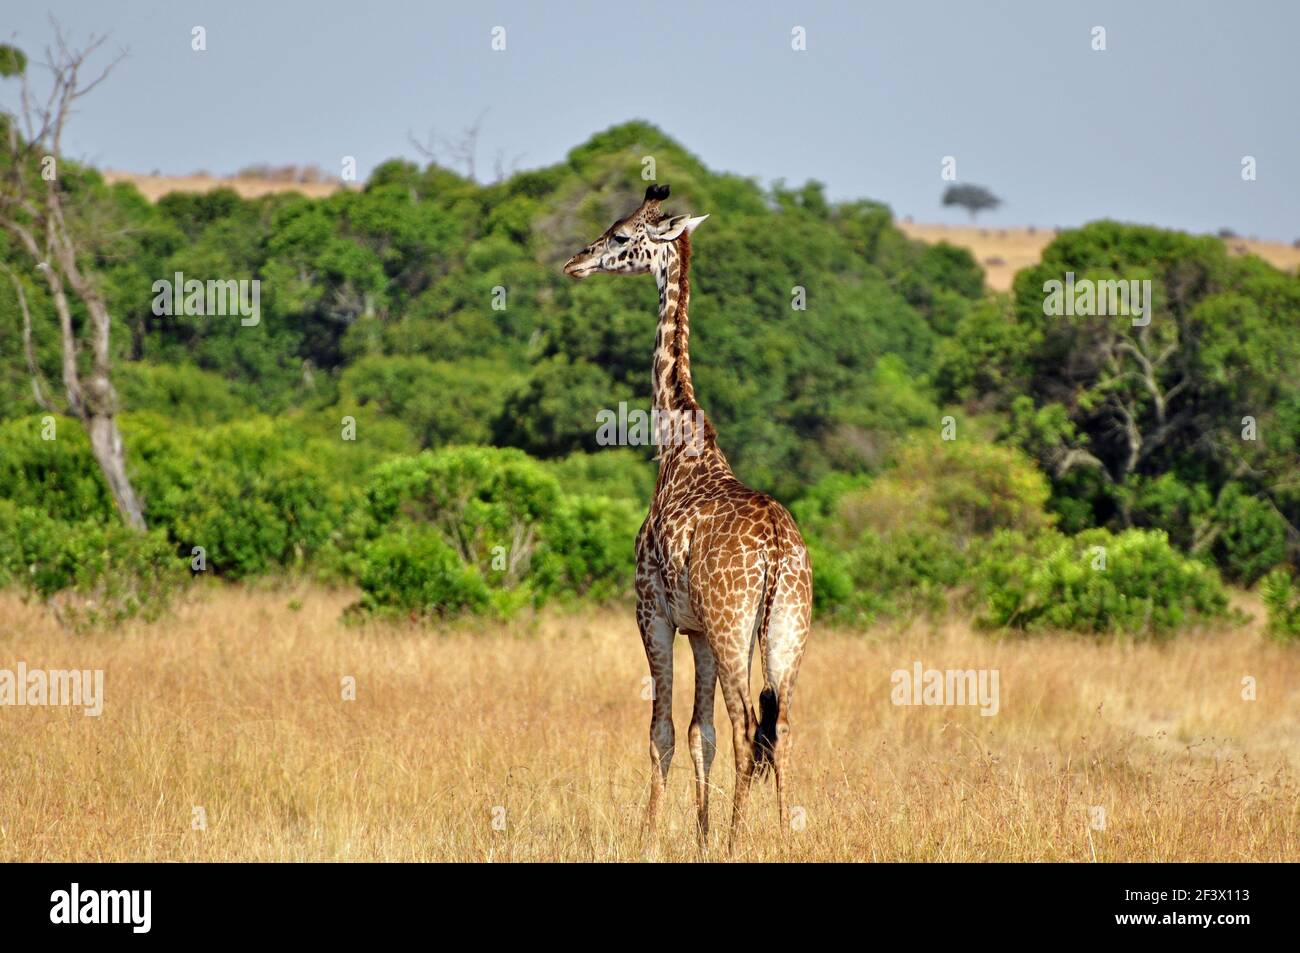 Young Masai Giraffe (Giraffa camelopardalis tippelskirchi) in the African Savanna. Masai Mara Game Reserve, Kenya Stock Photo